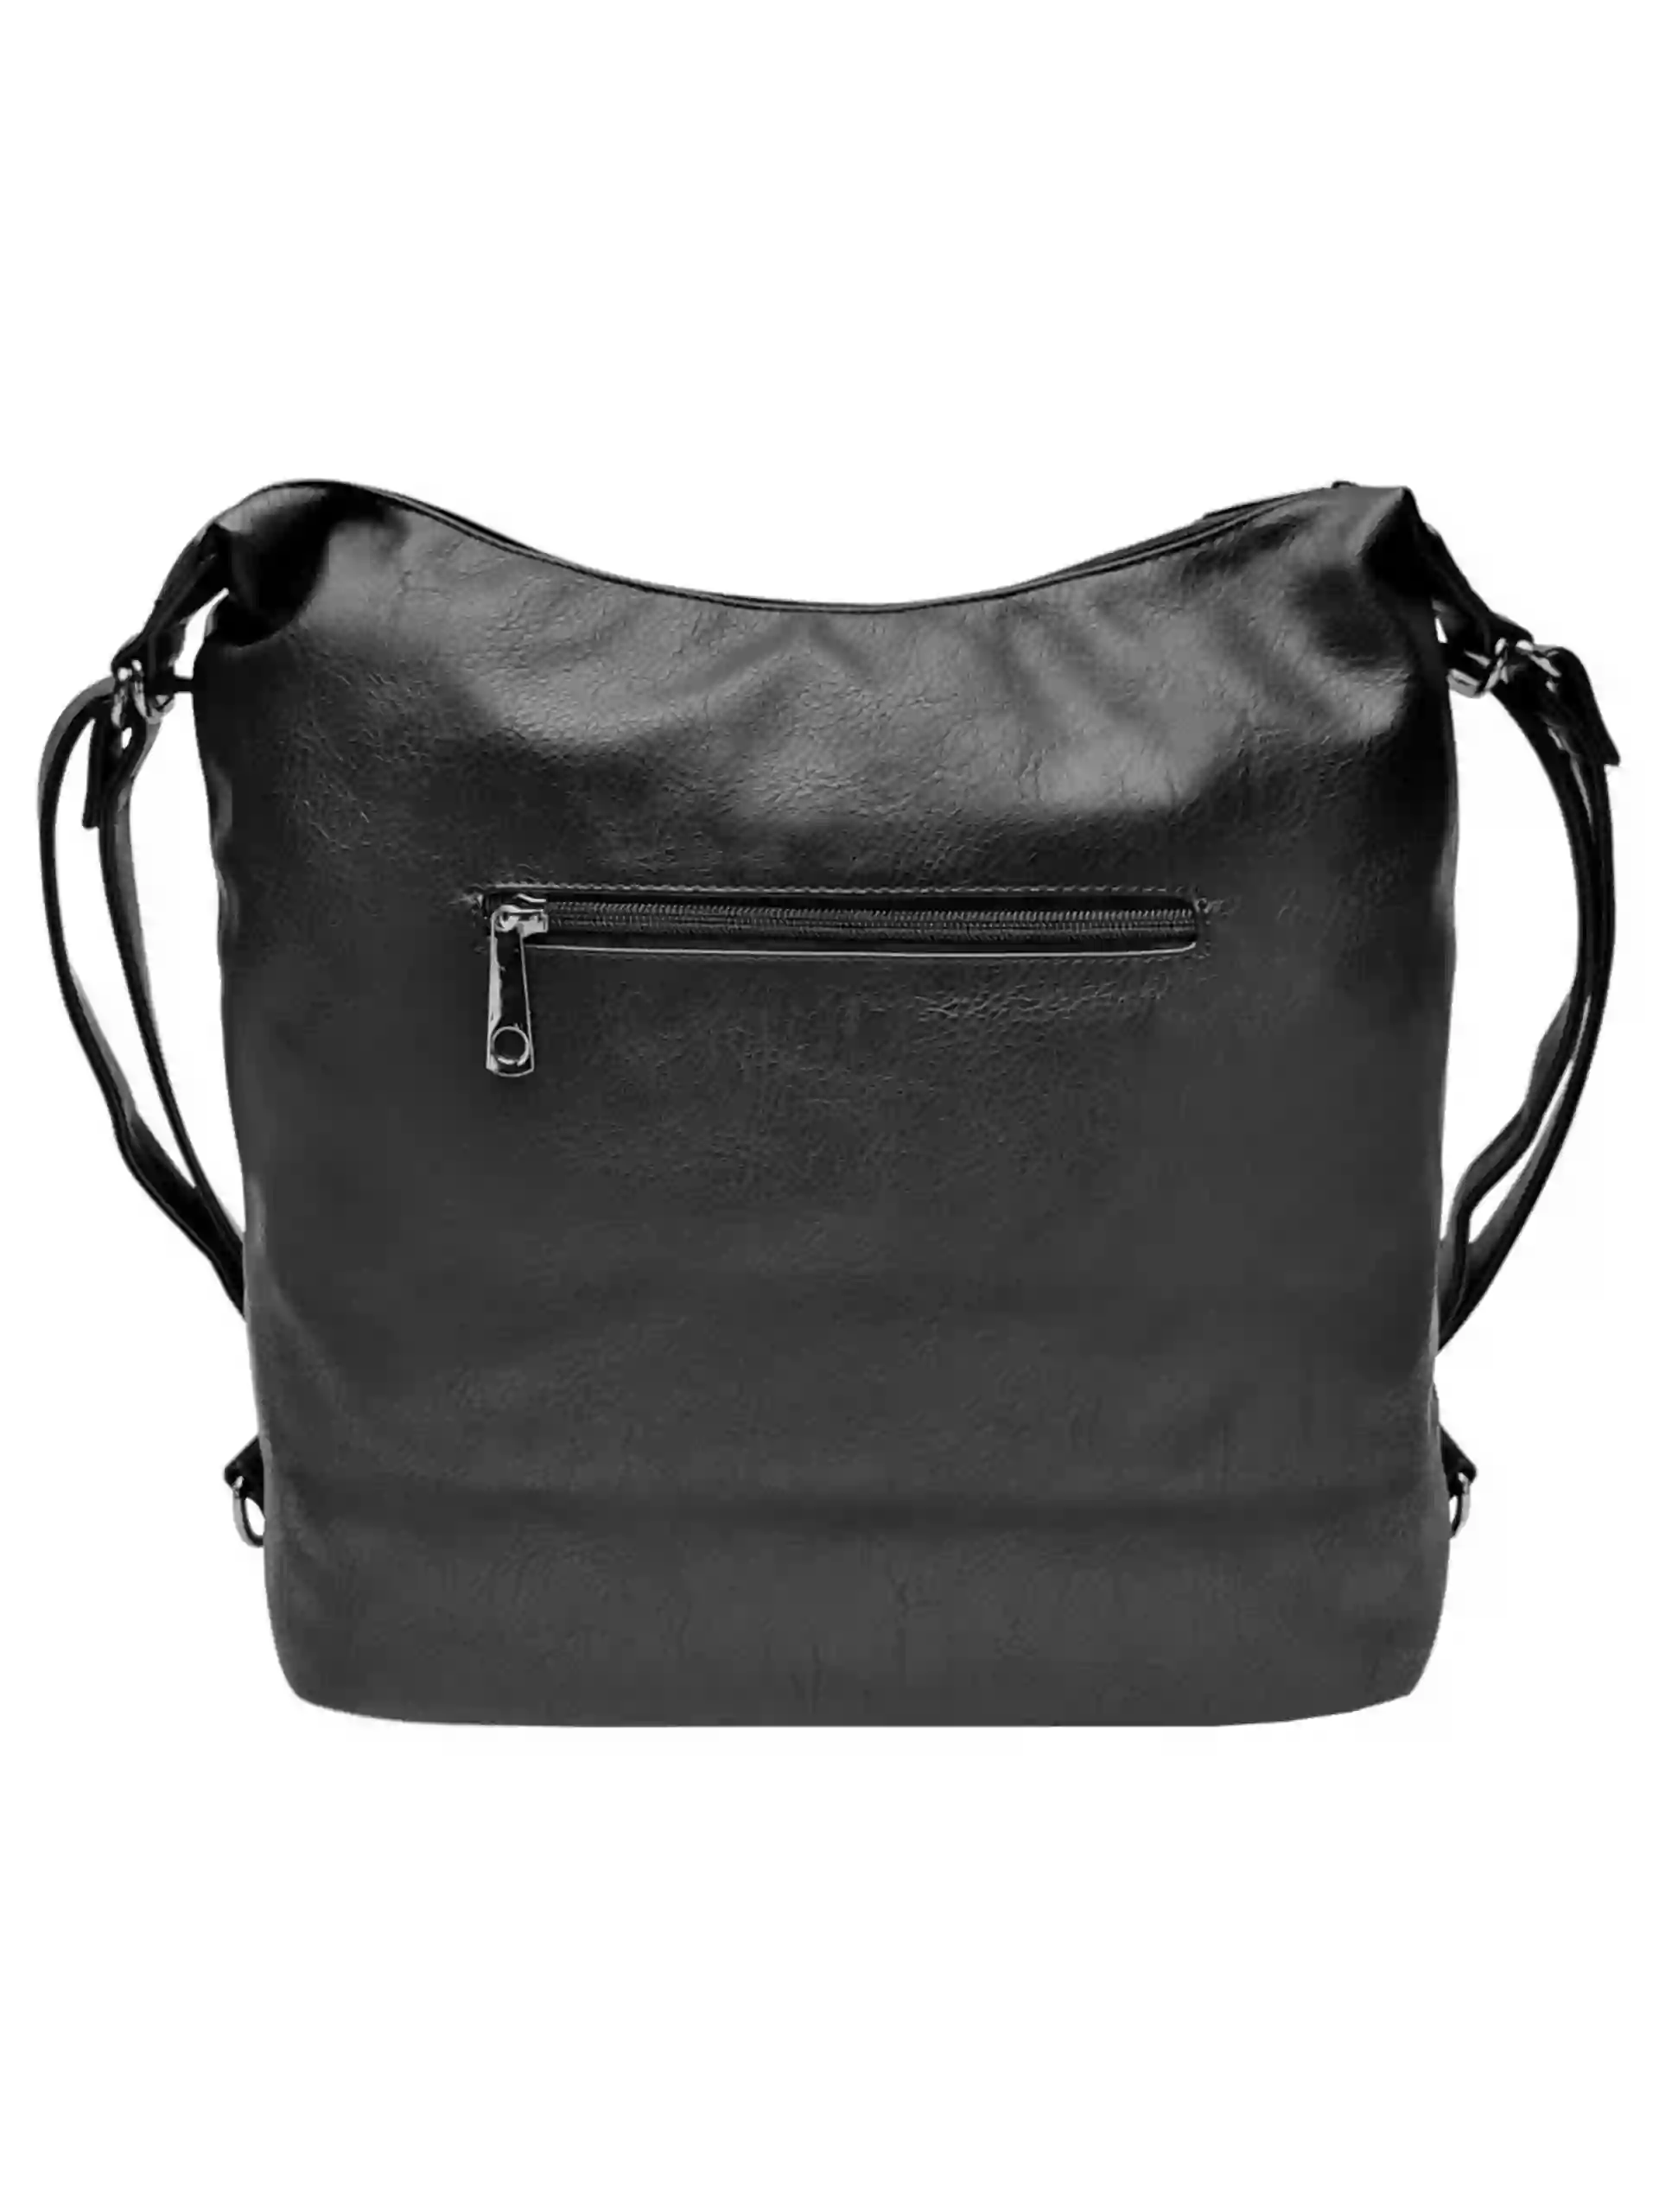 Velký černý kabelko-batoh z eko kůže, Tapple, H18077, zadní strana kabelko-batohu 2v1